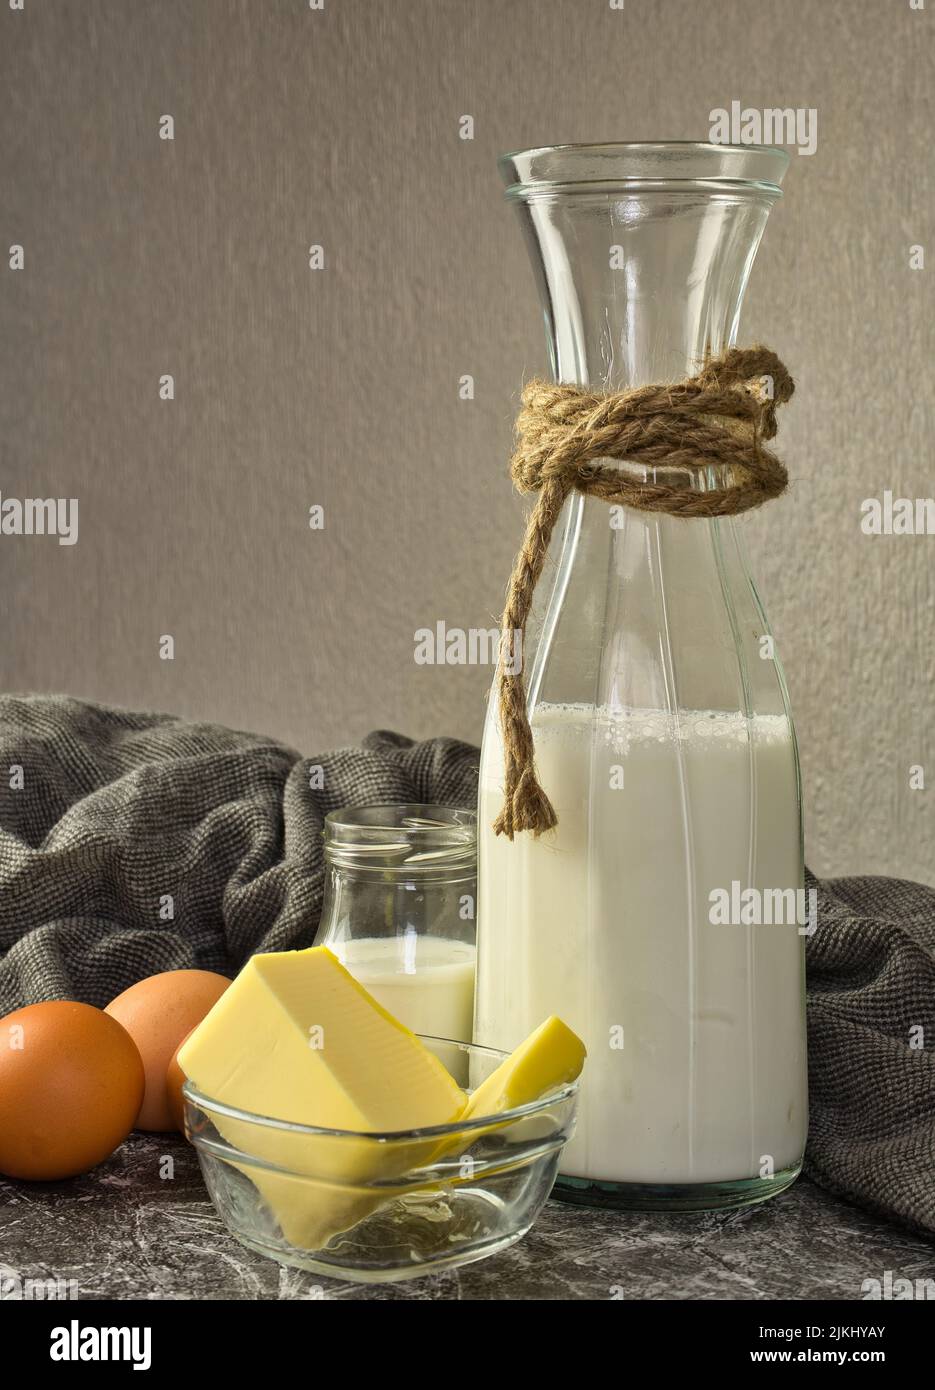 Diversi prodotti lattiero-caseari: Yogurt, formaggio, latte e uova. Vitamine idrosolubili (B1, B2, niacina e acido folico) e vitamine liposolubili (vitamina A). Foto Stock